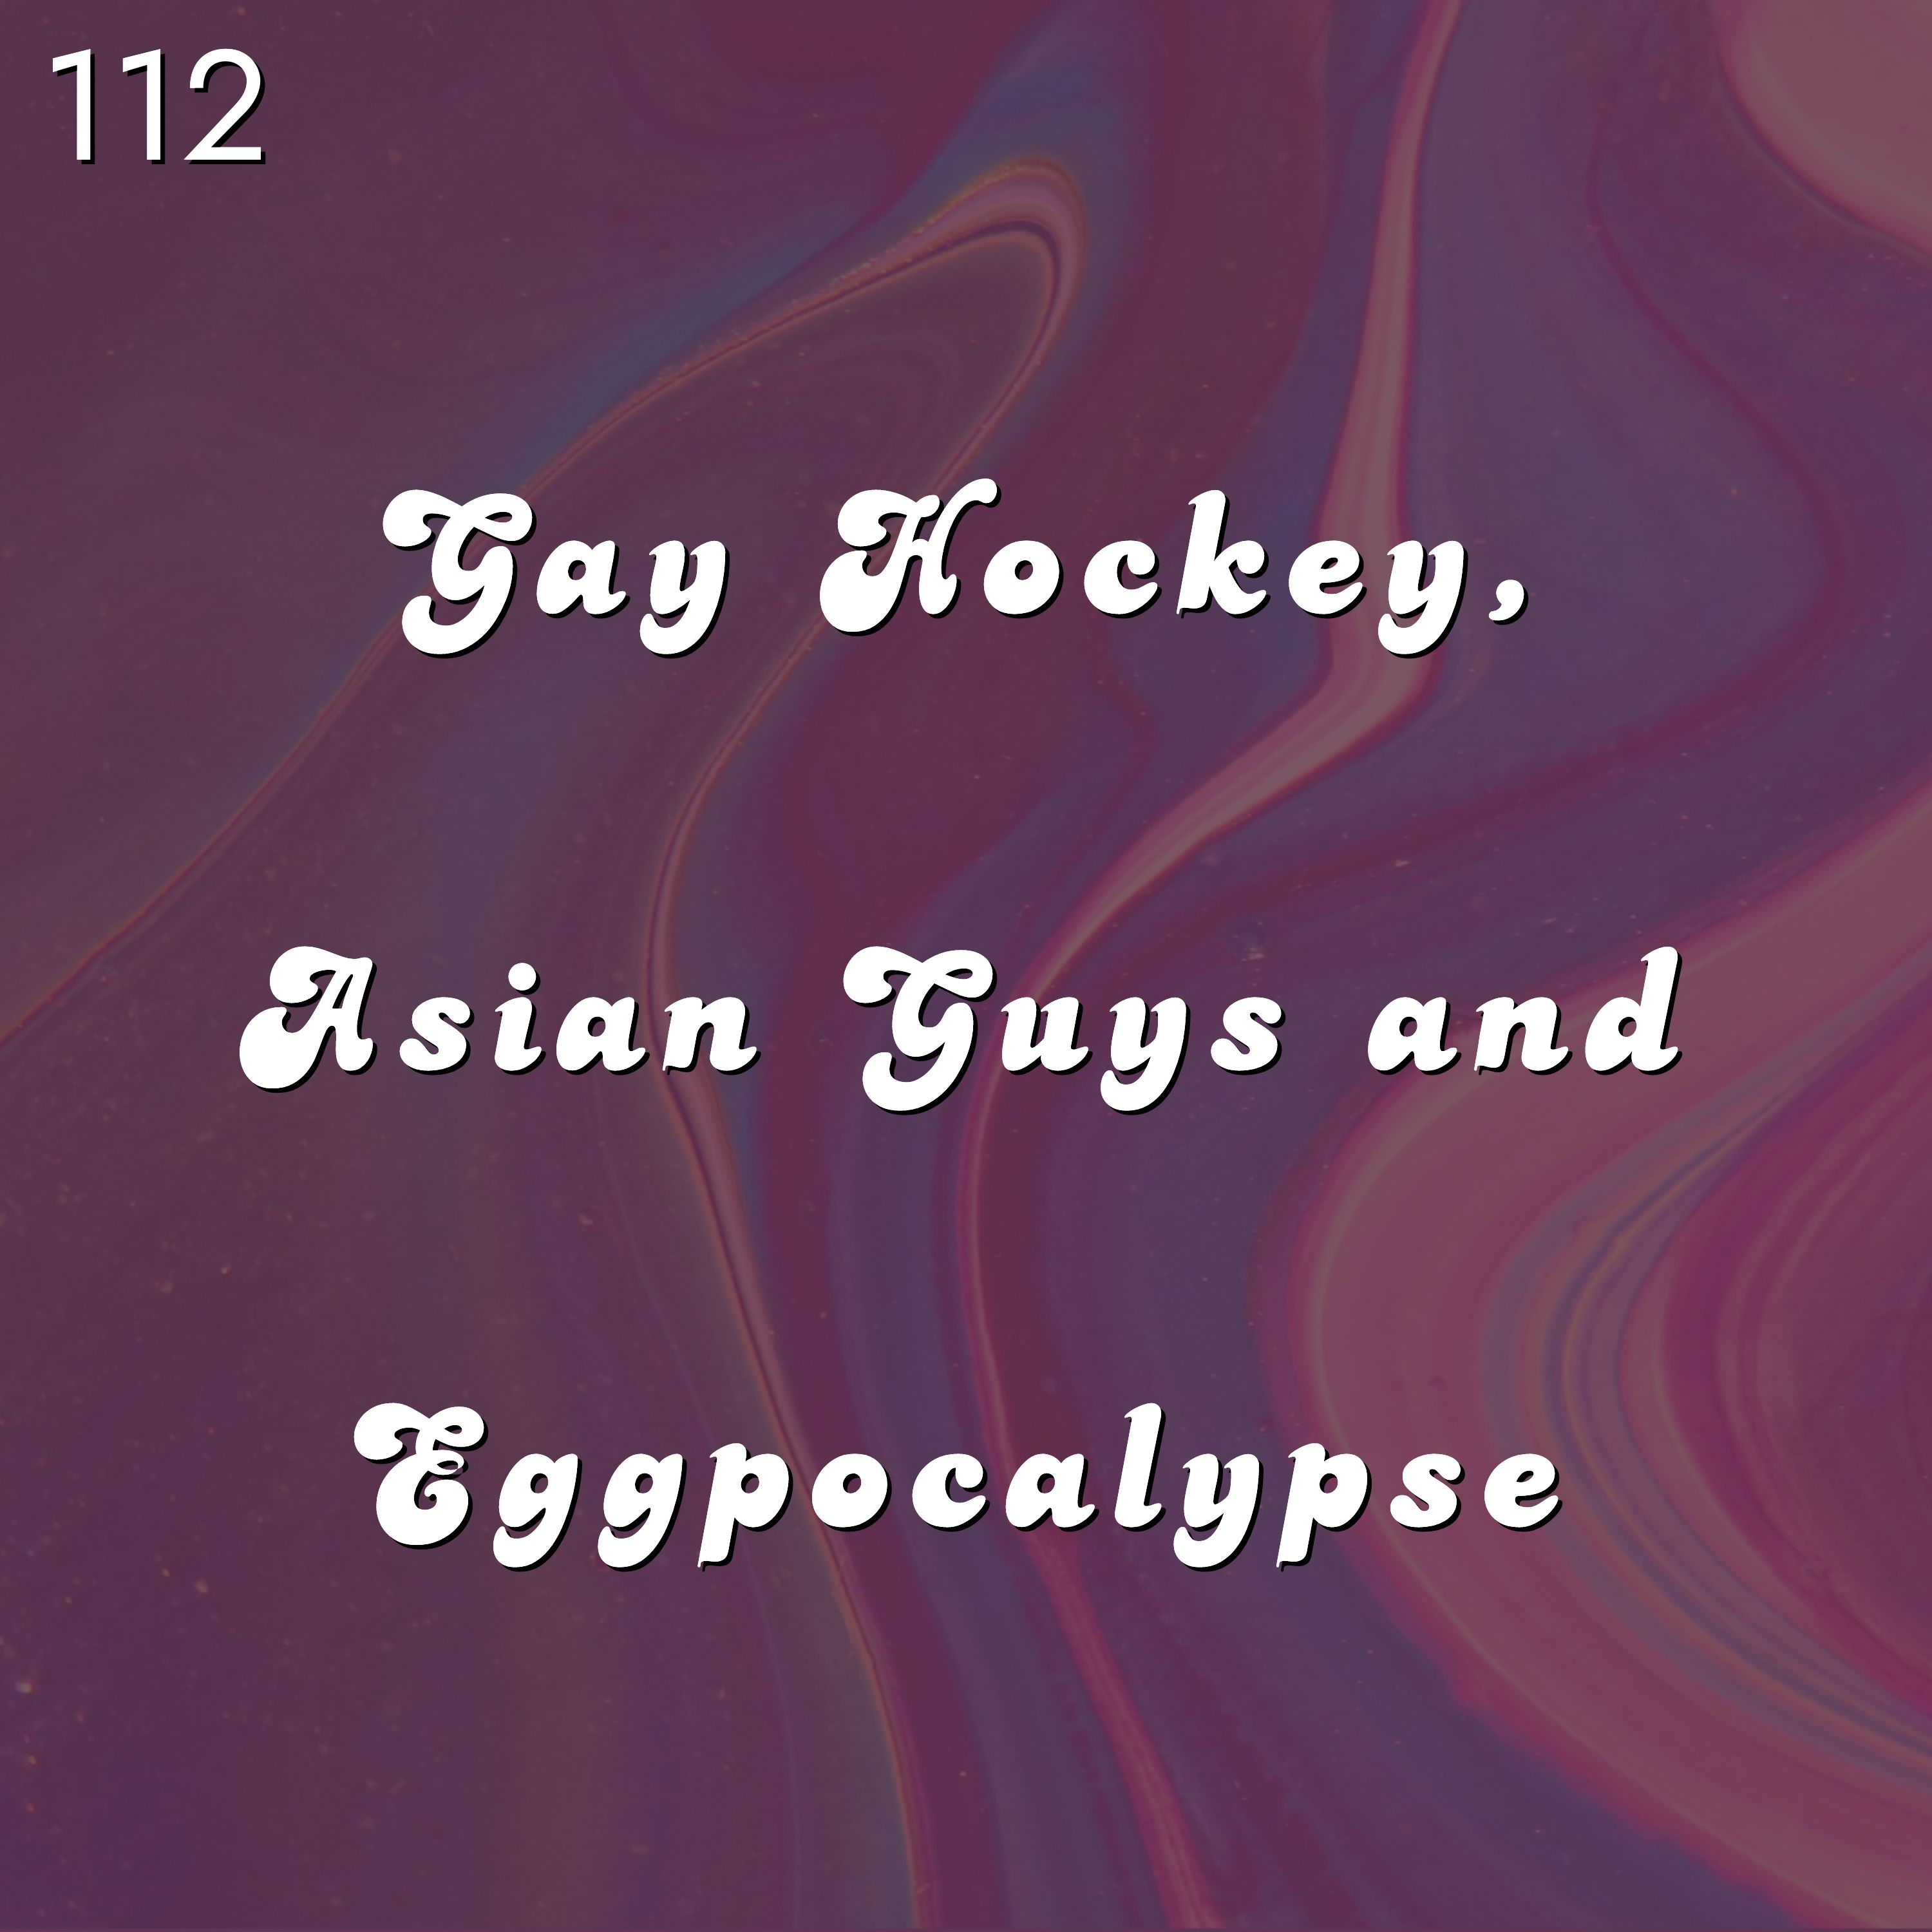 #112 - Gay Hockey, Asian Guys and Eggpocalypse